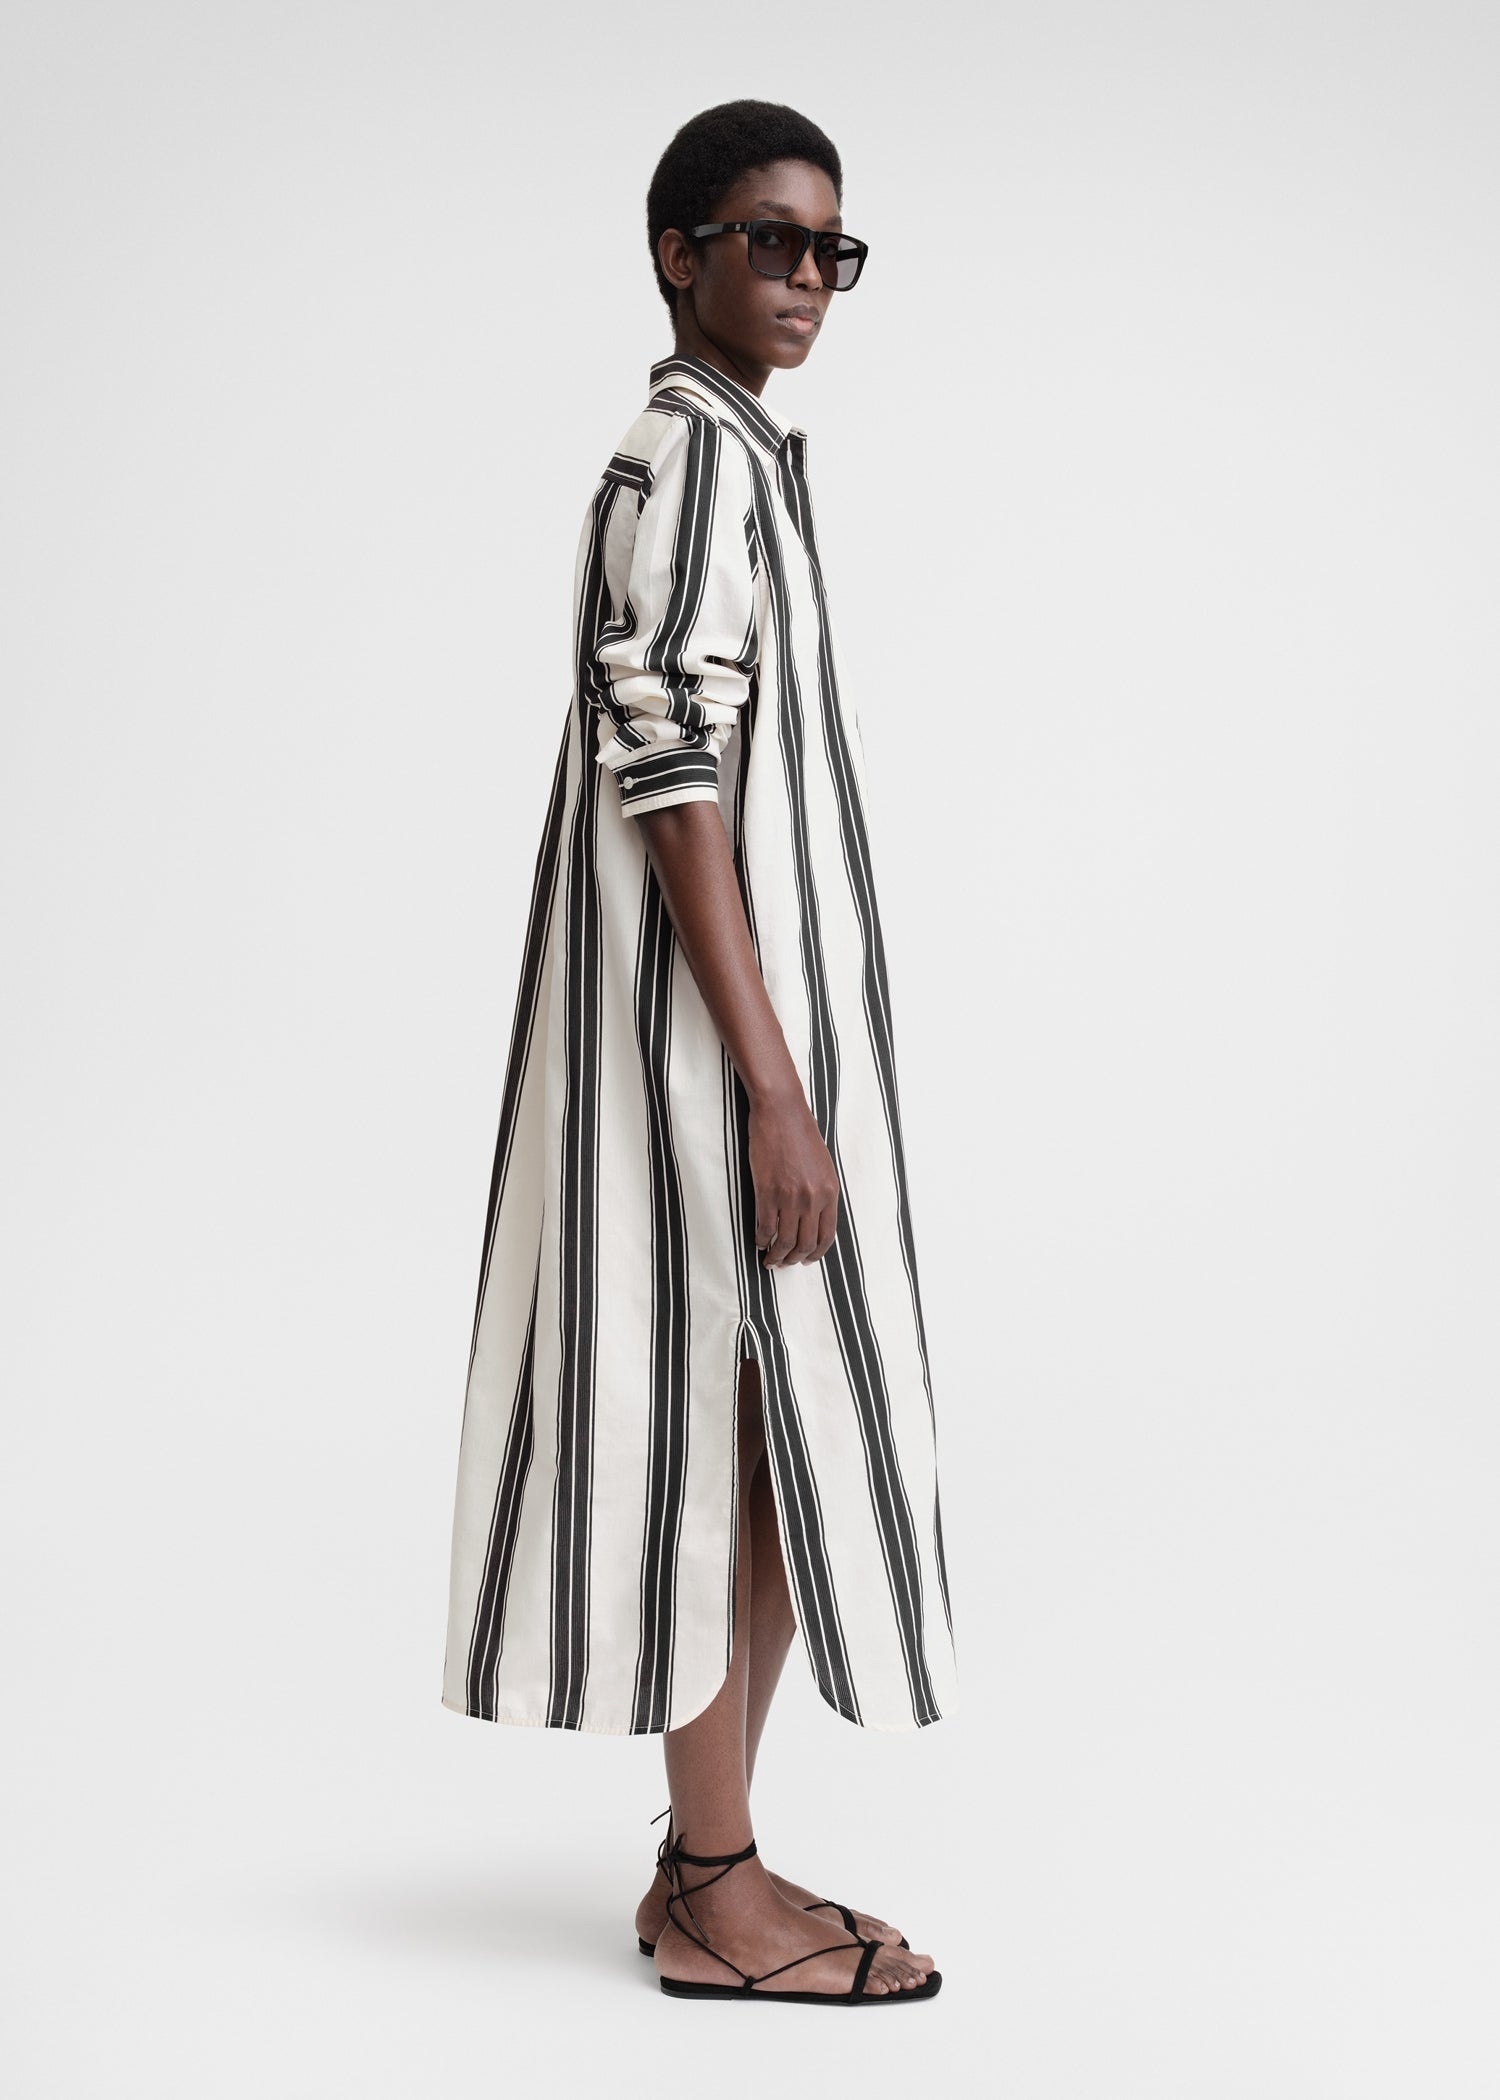 Jacquard-striped tunic dress black/white - 3